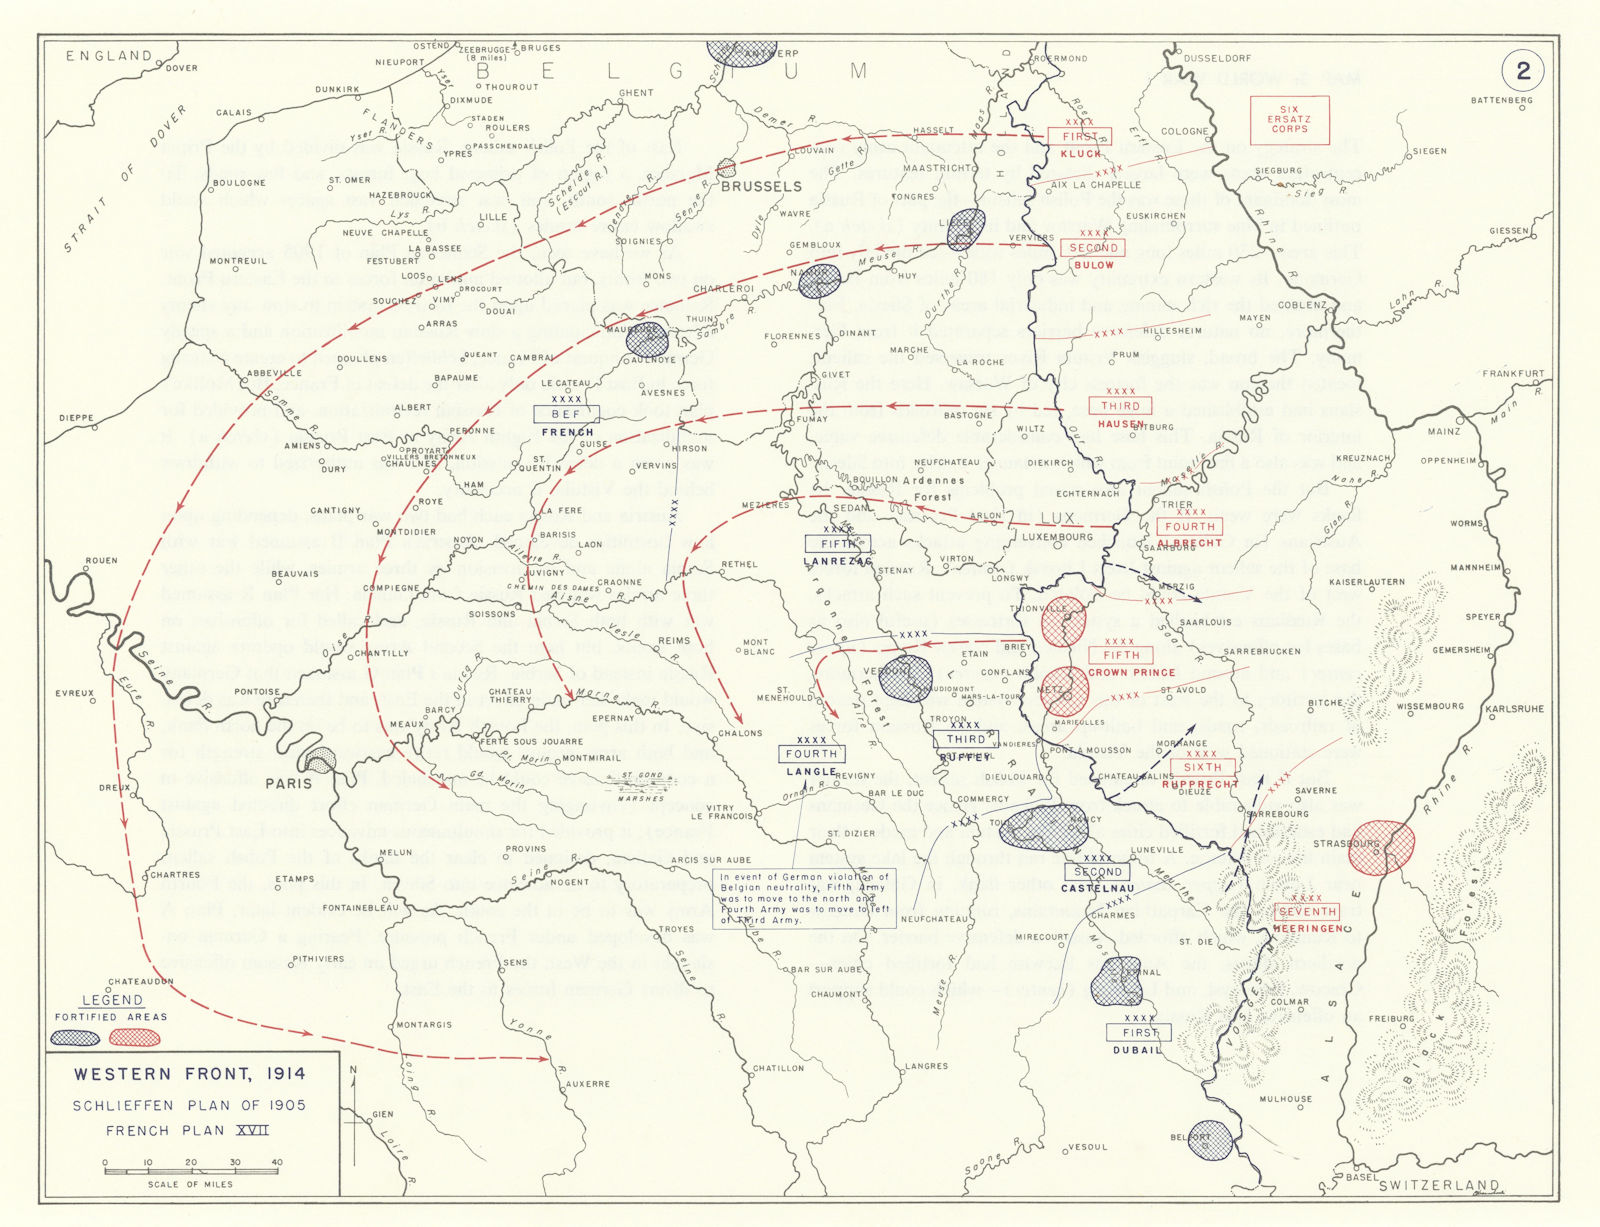 World War 1. Western Front 1914. 1905 Schlieffen Plan. French Plan XVII 1959 map